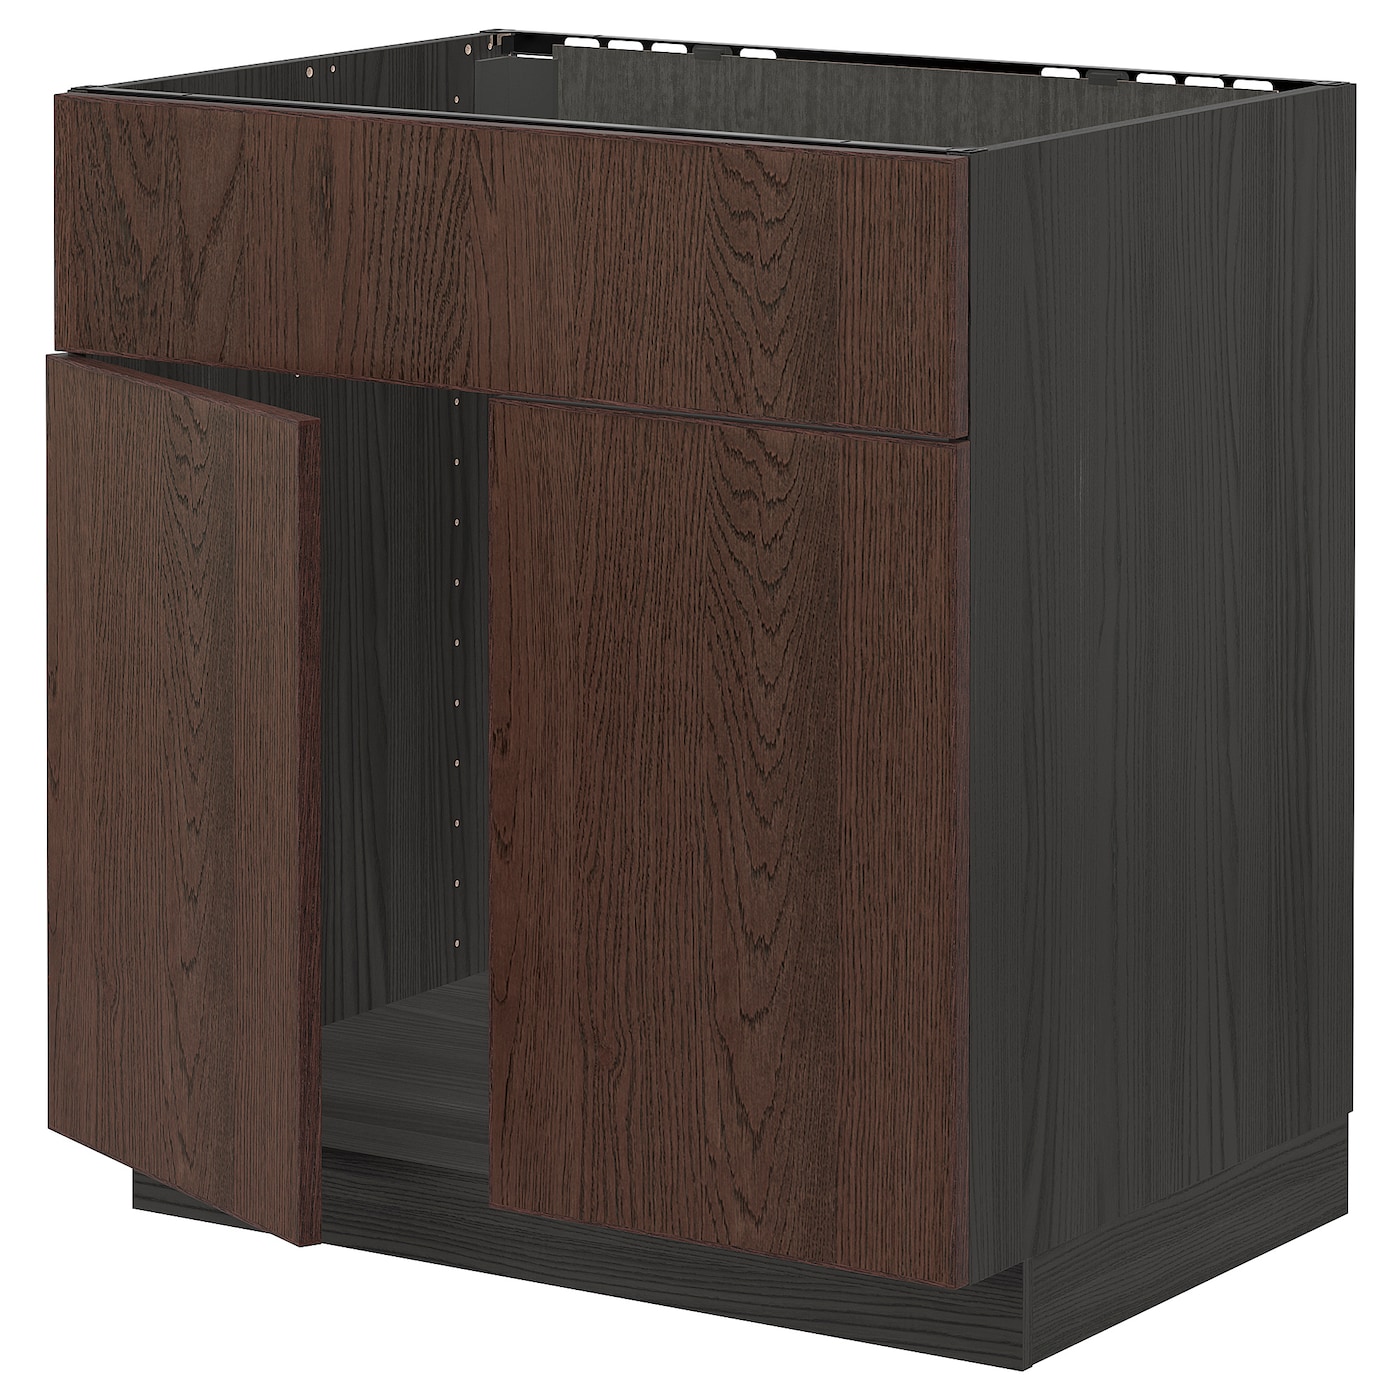 Напольный кухонный шкаф  - IKEA METOD MAXIMERA, 88x62x80см, черный/темно-коричневый, МЕТОД МАКСИМЕРА ИКЕА